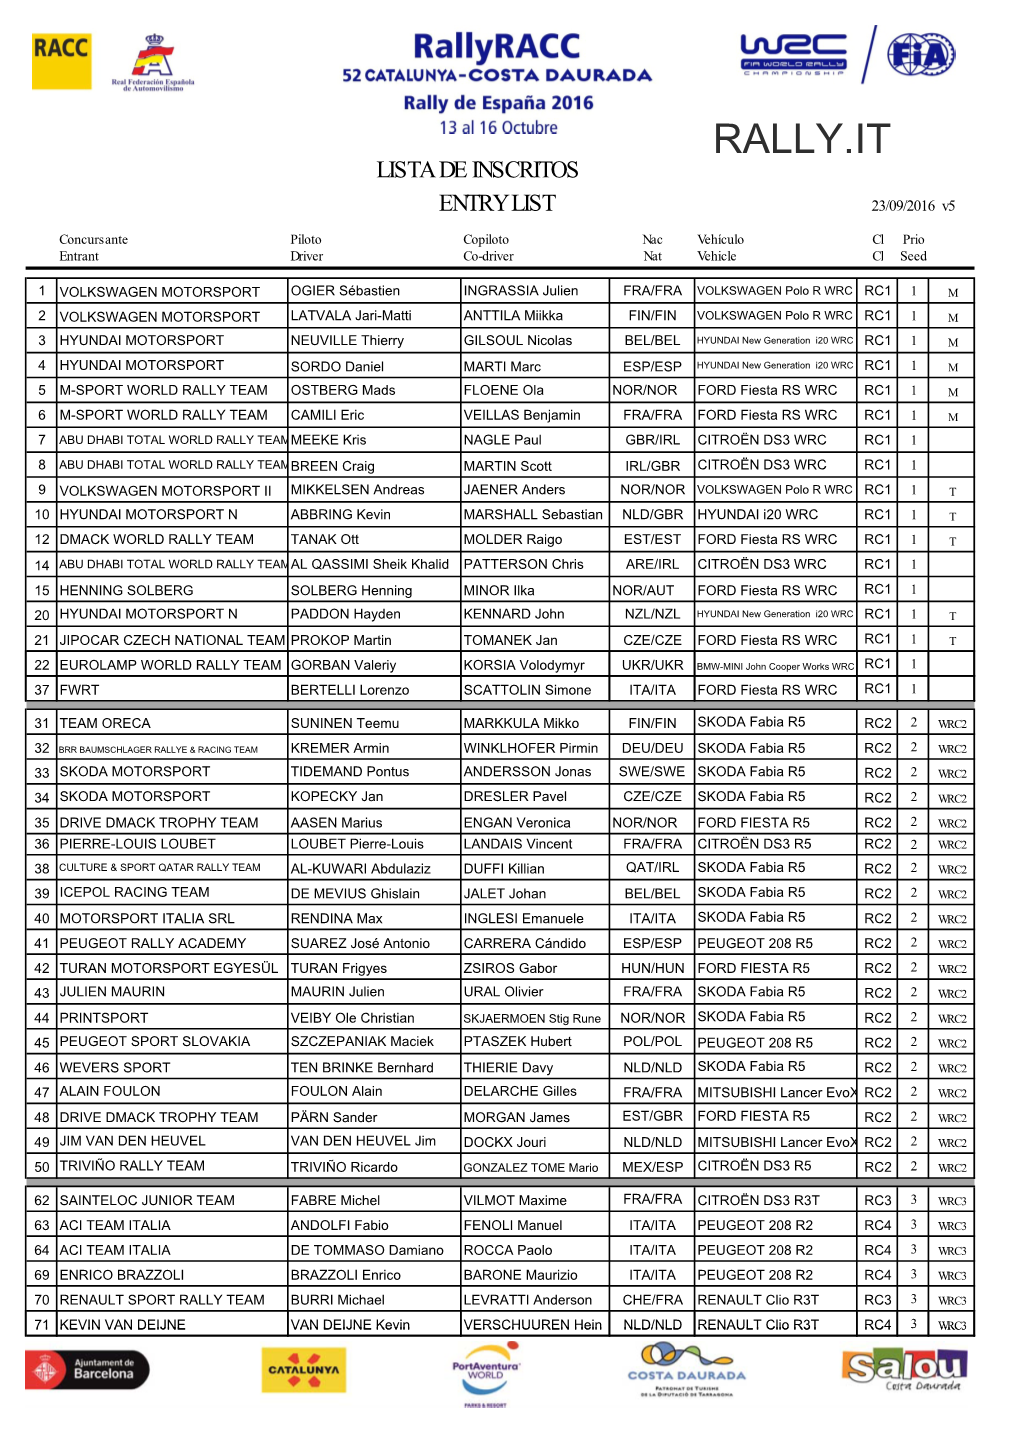 V5 2016 Rallyracc Entry List with FIA Approval 23 September.Xlsx